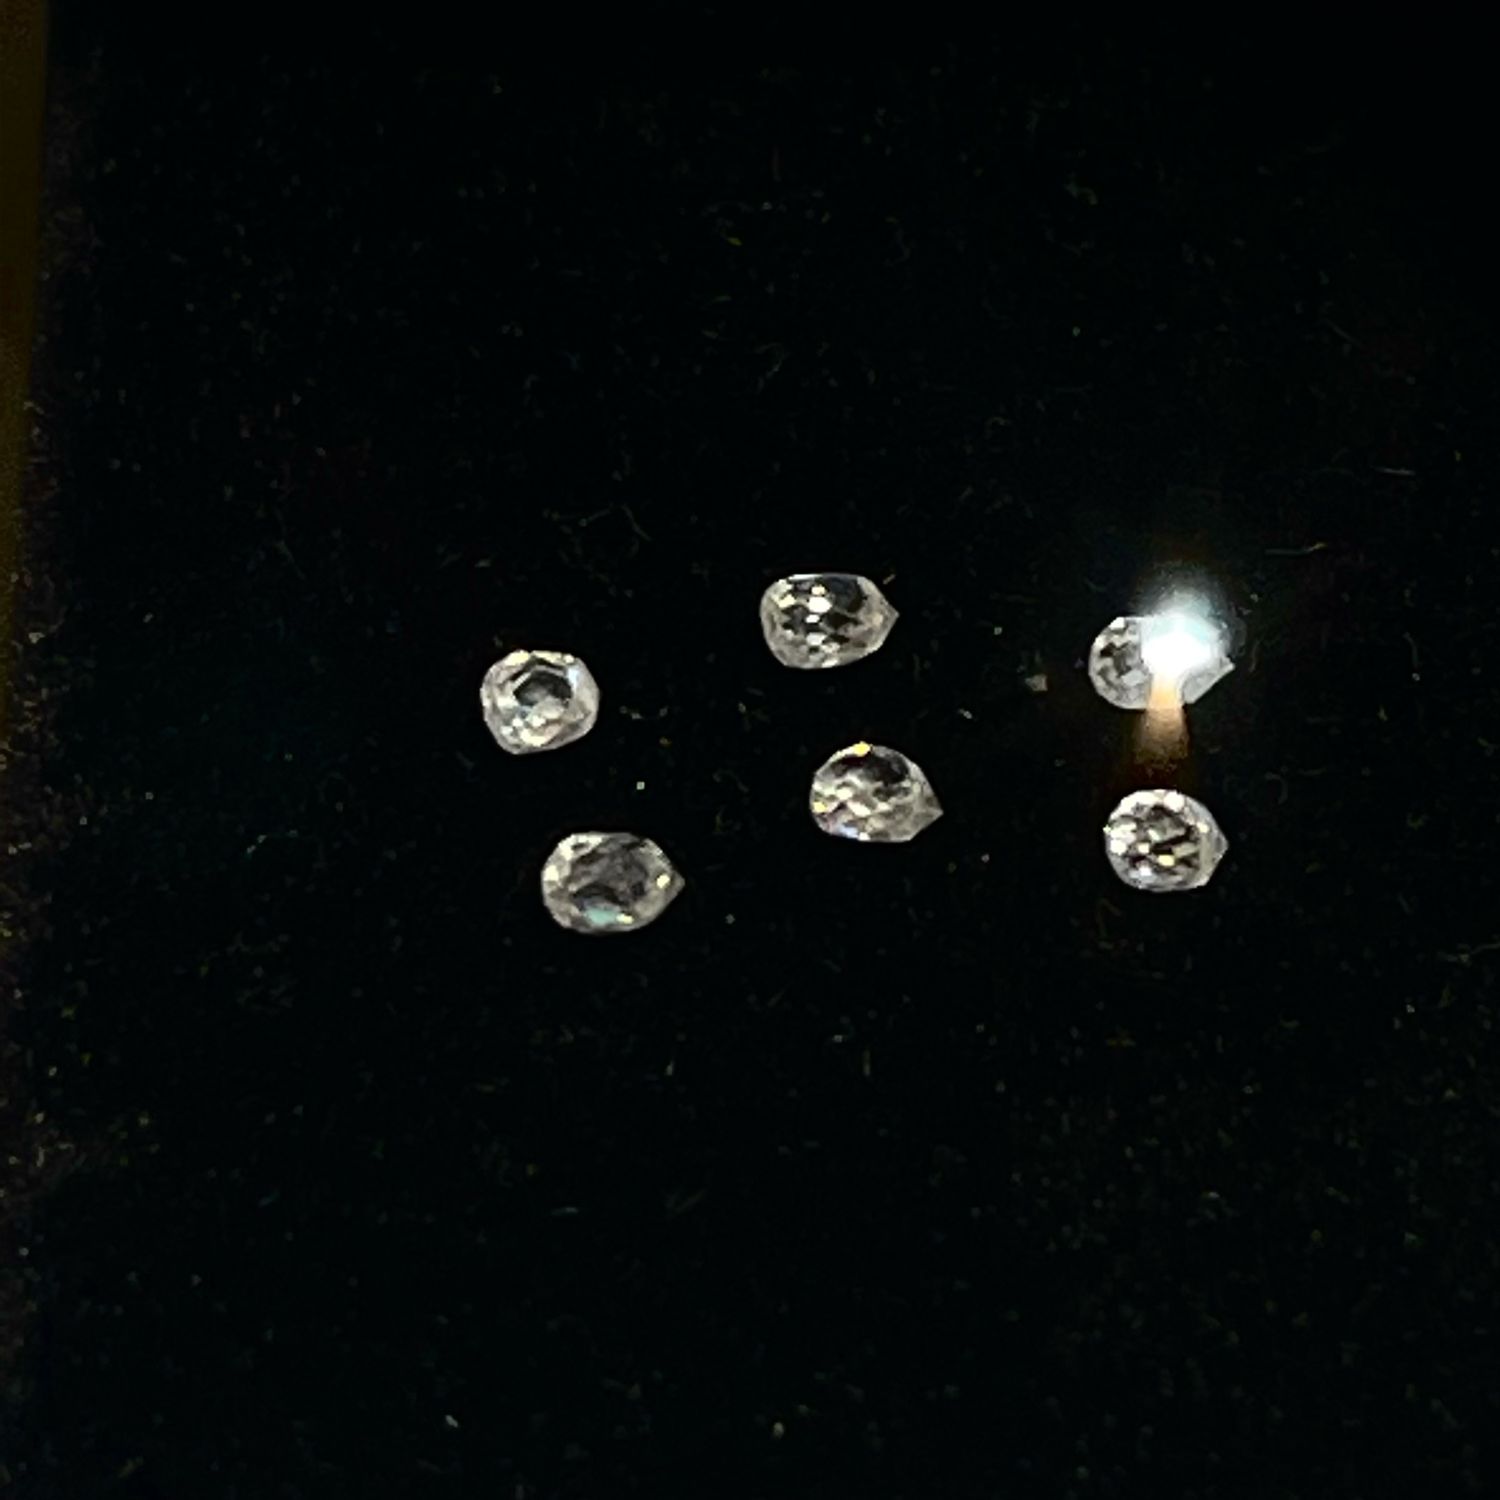 Натуральные 6шт белые бриллианты-капли-бриолеты просверл. 0.09-0.11кт, Бусины, Москва,  Фото №1